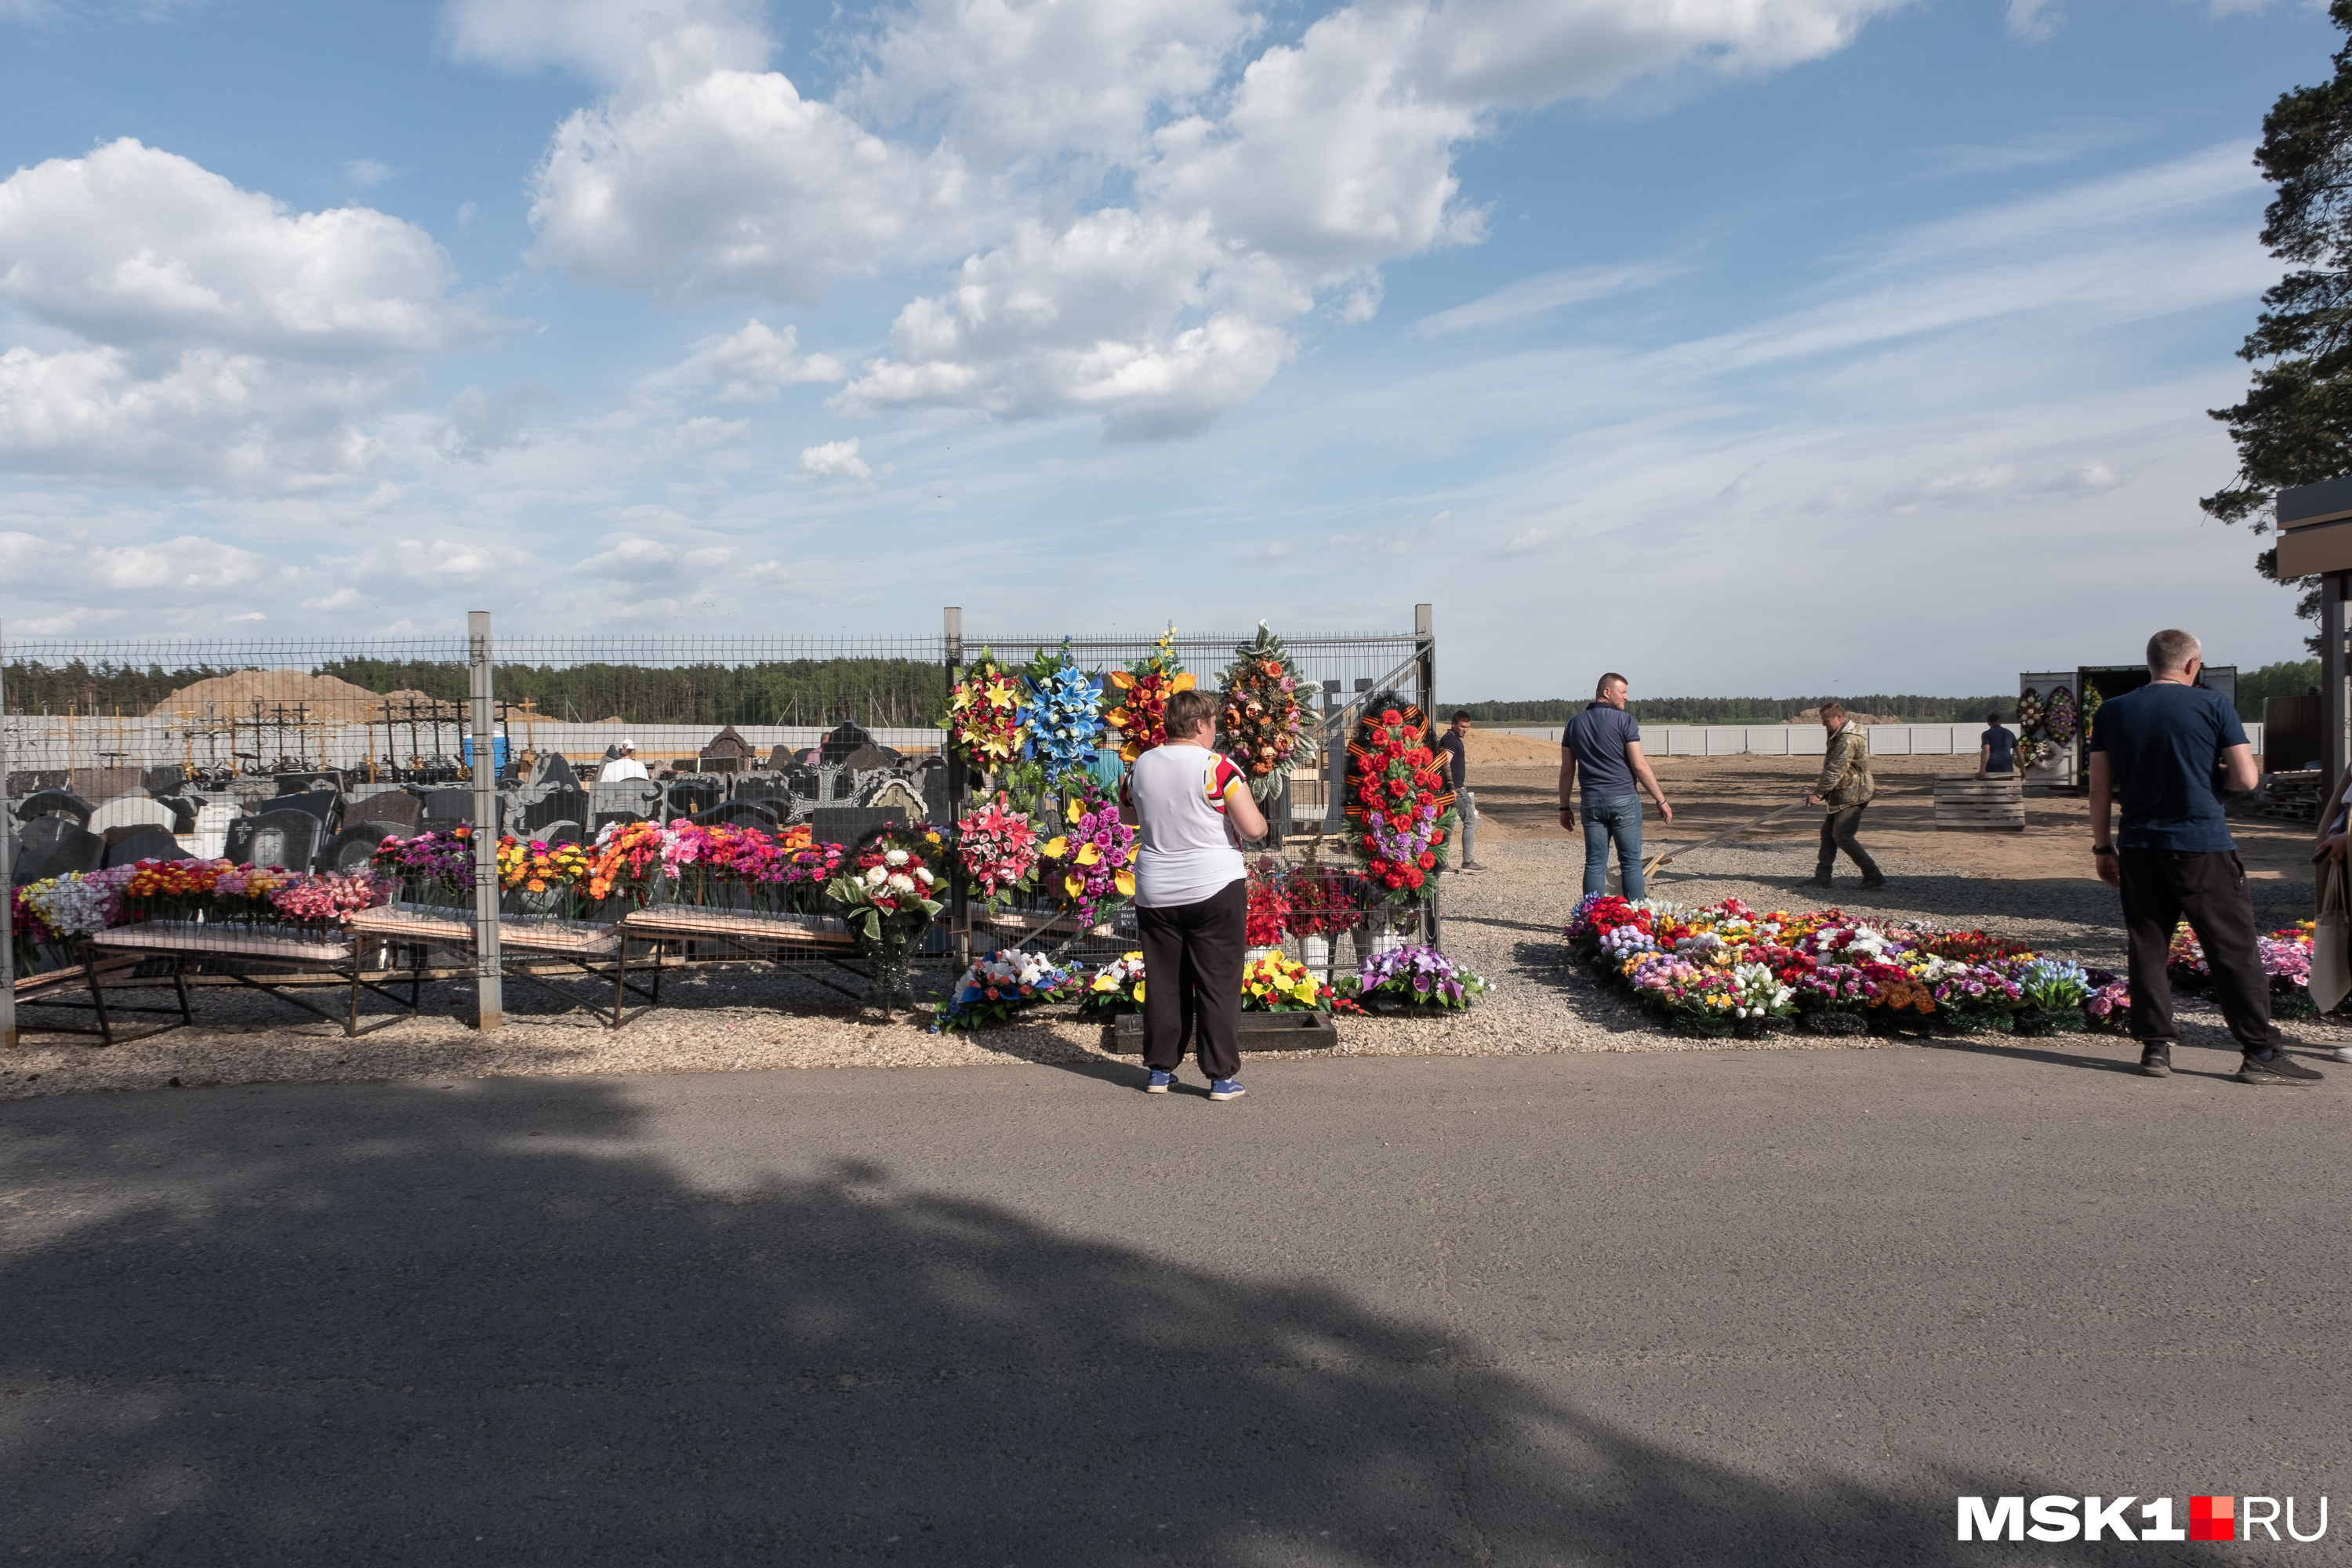 Рядом с кладбищем находится палатка, где продают живые цветы, а также рабочие устанавливают надгробия